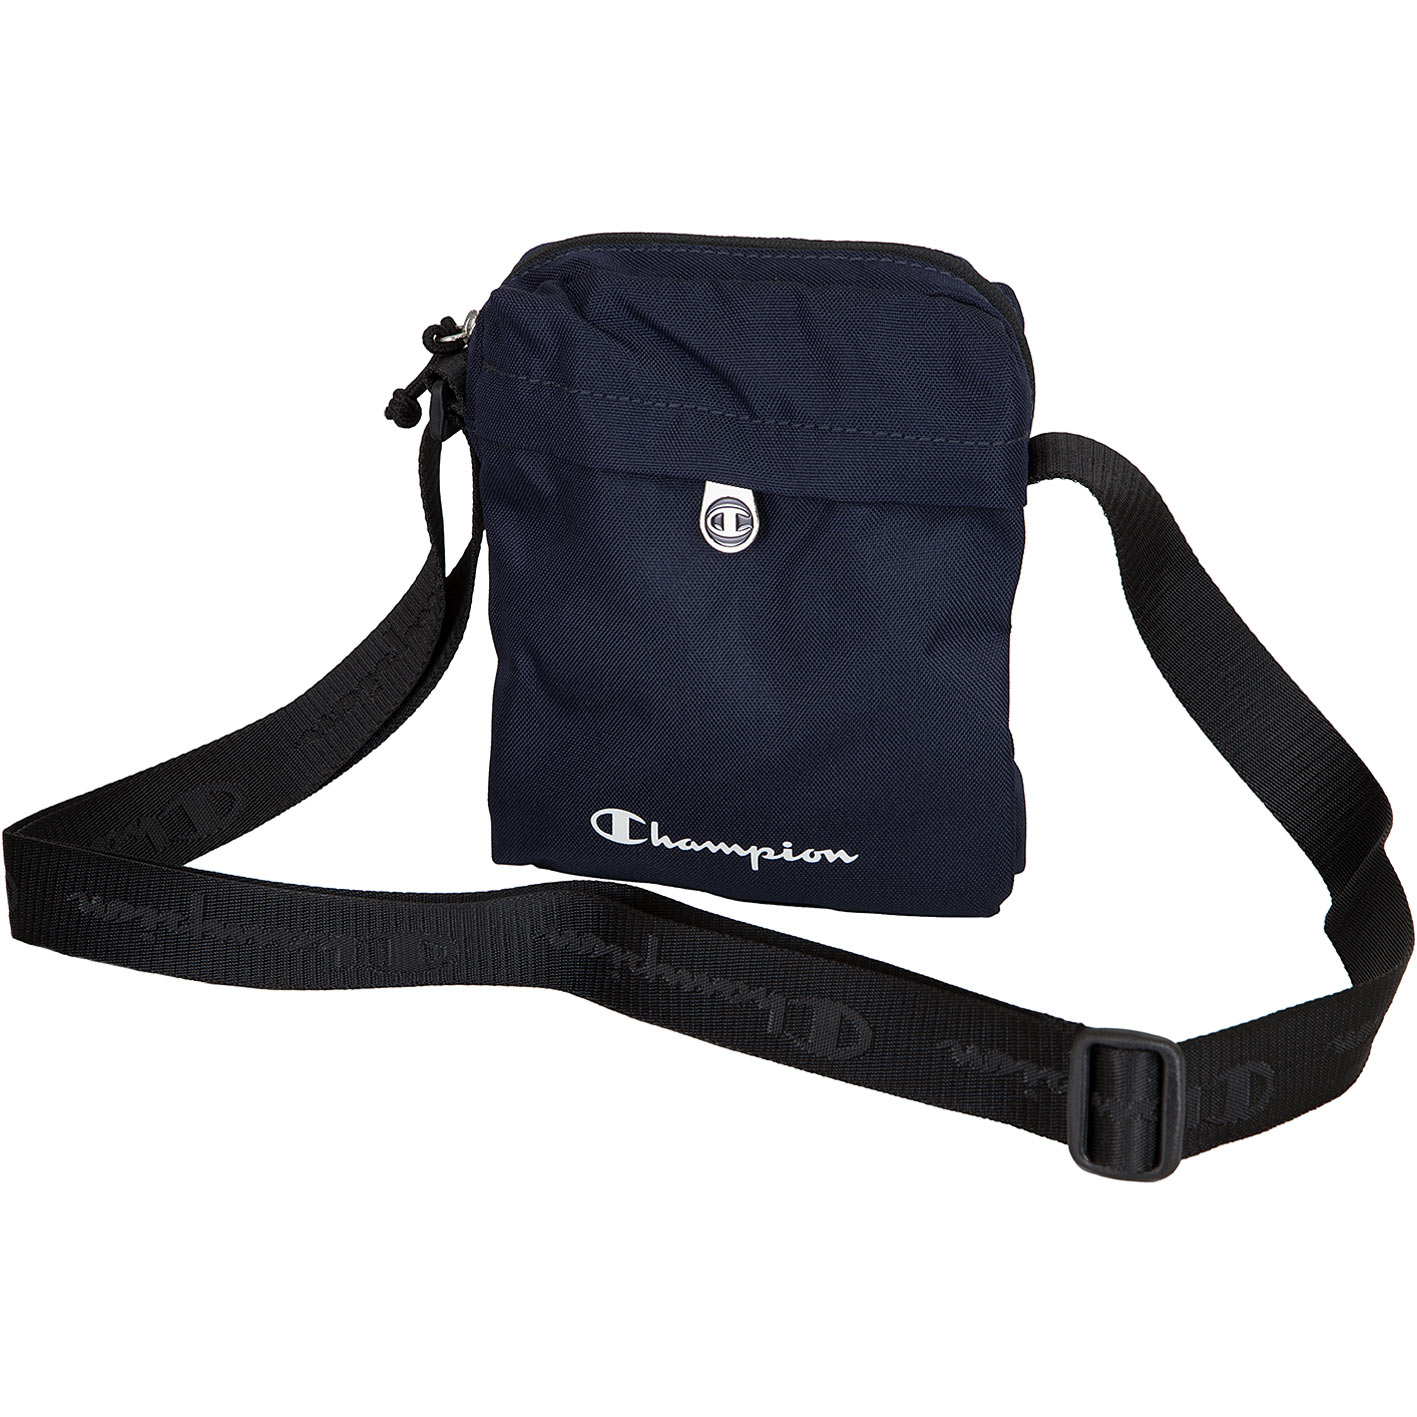 ☆ Champion Mini Tasche Small Shoulder Bag dunkelblau - hier bestellen!